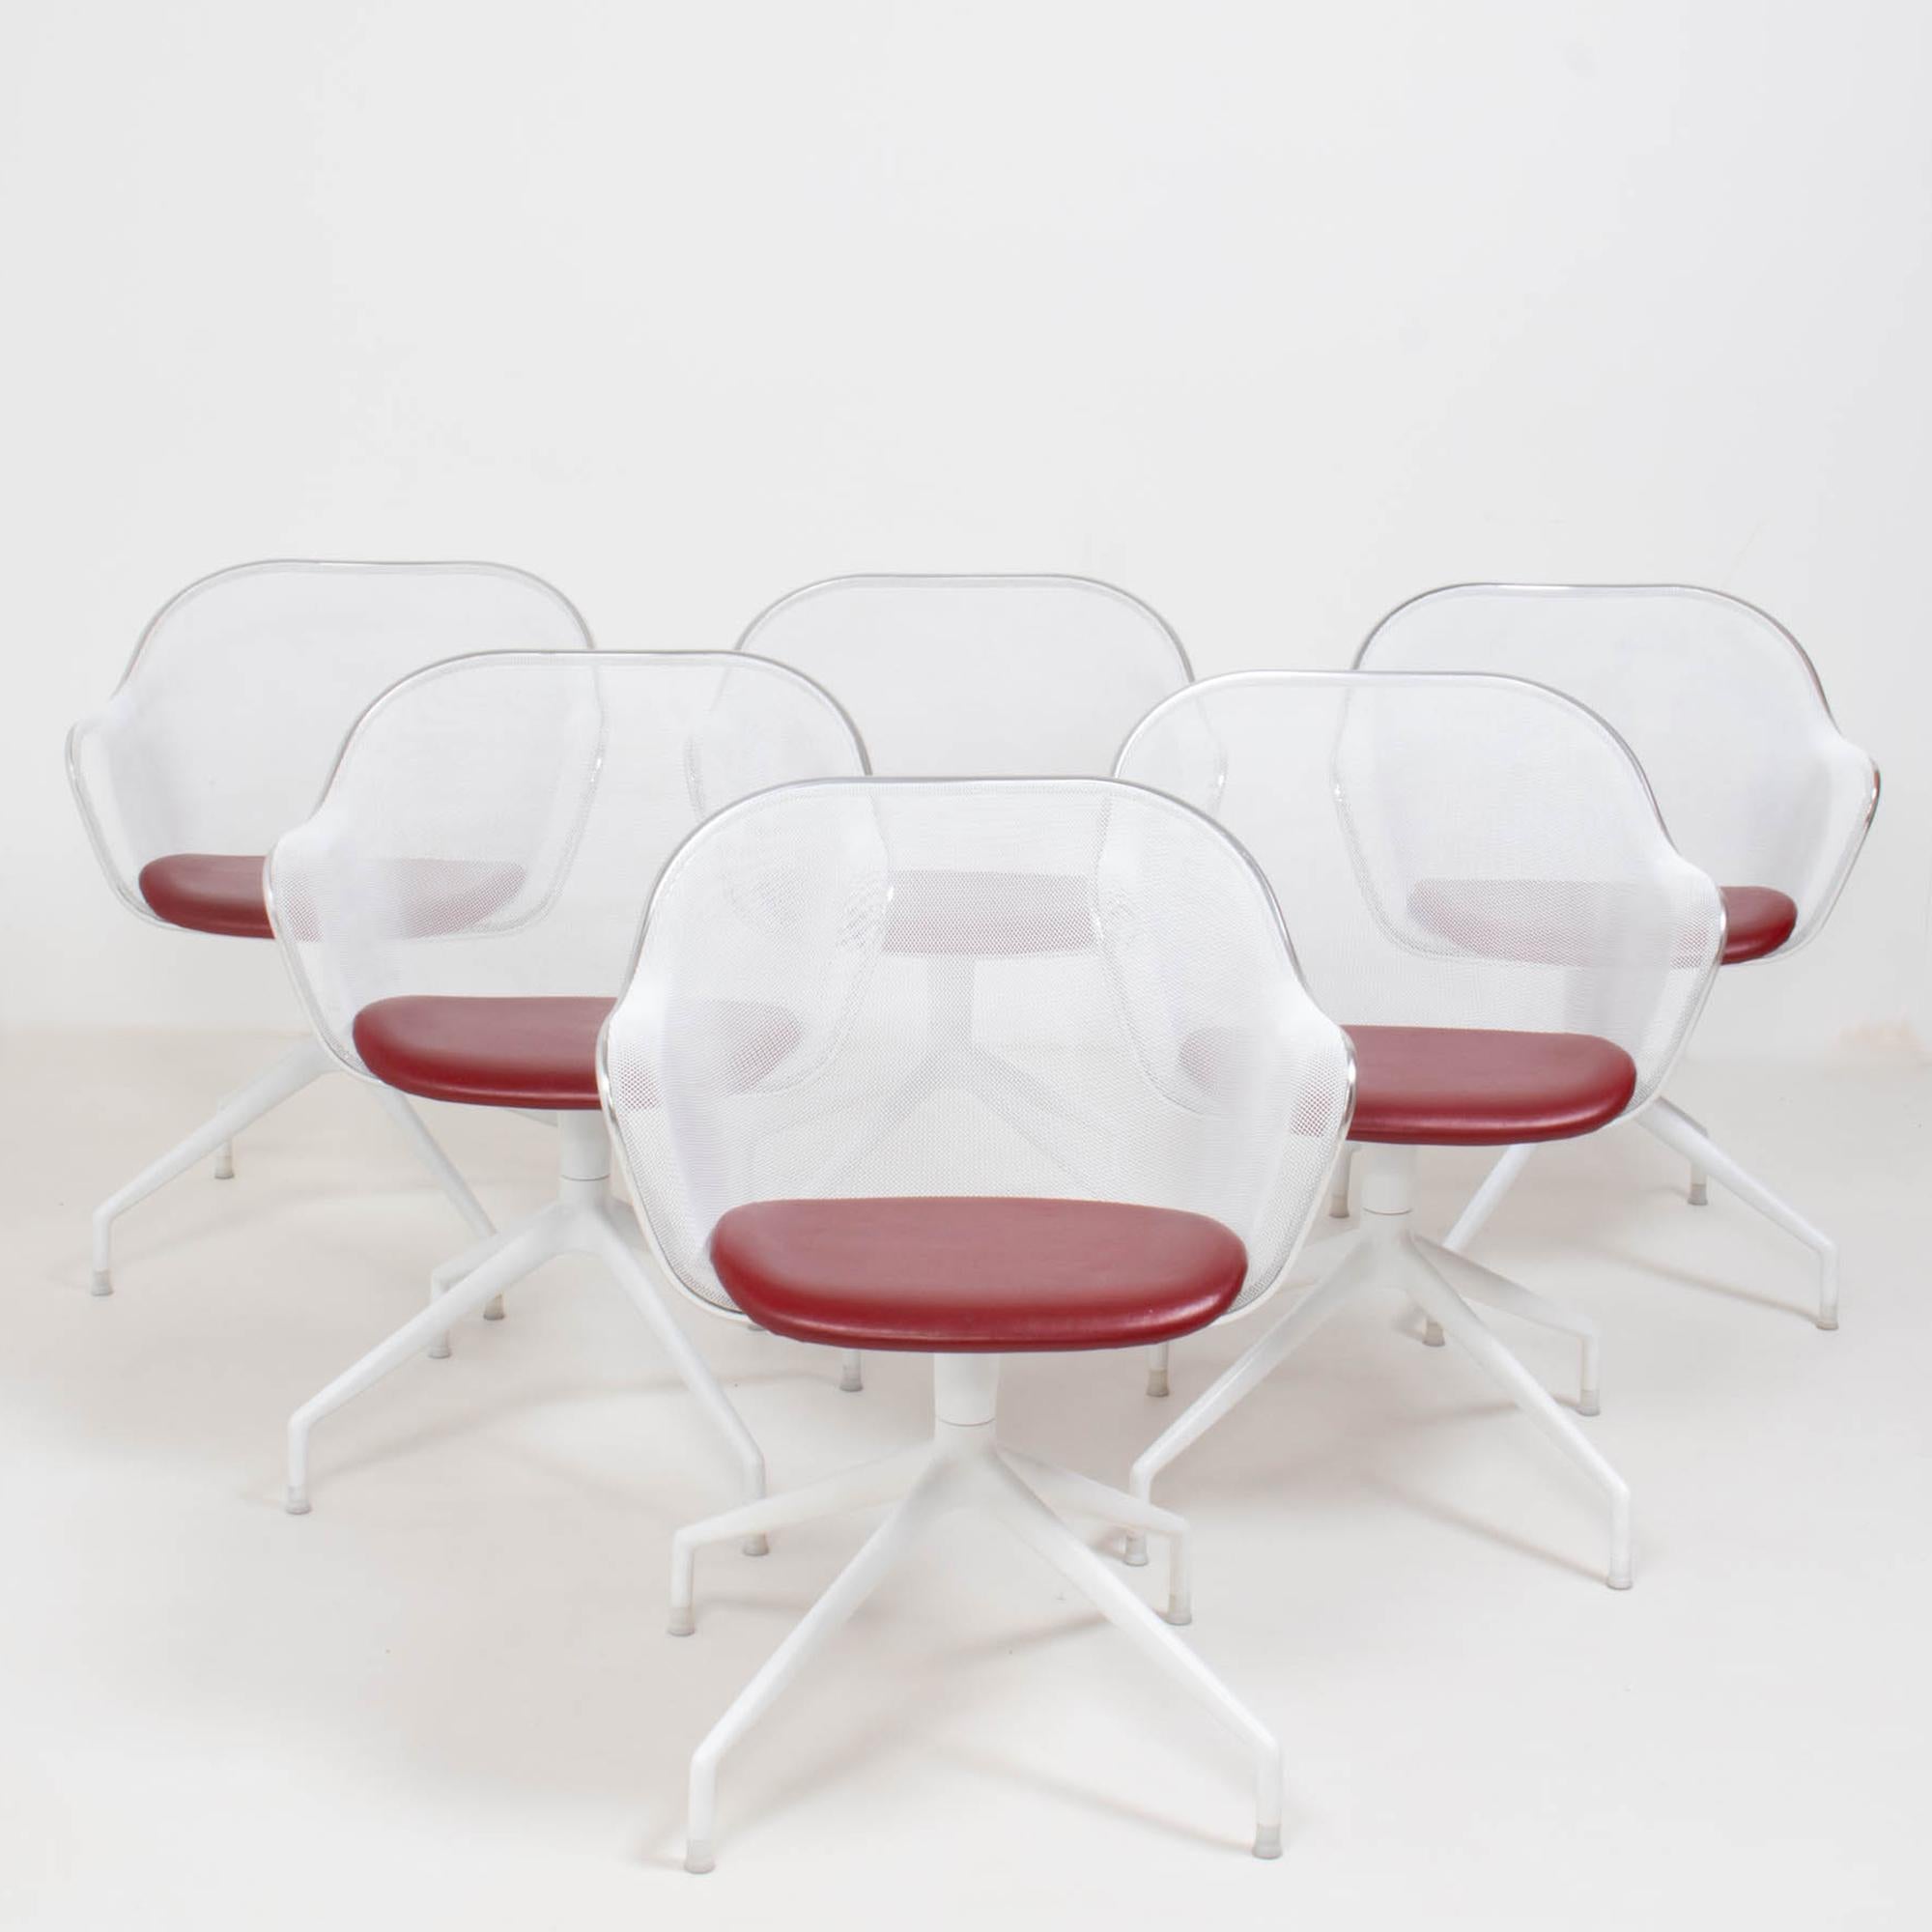 Conçue par Antonio Citterio pour B&B Italia en 2000, la chaise de salle à manger Luta est devenue un modèle emblématique de la marque.

Fabriquées à partir d'une maille d'acier léger peinte en blanc, les chaises sont dotées d'un profil périmétrique